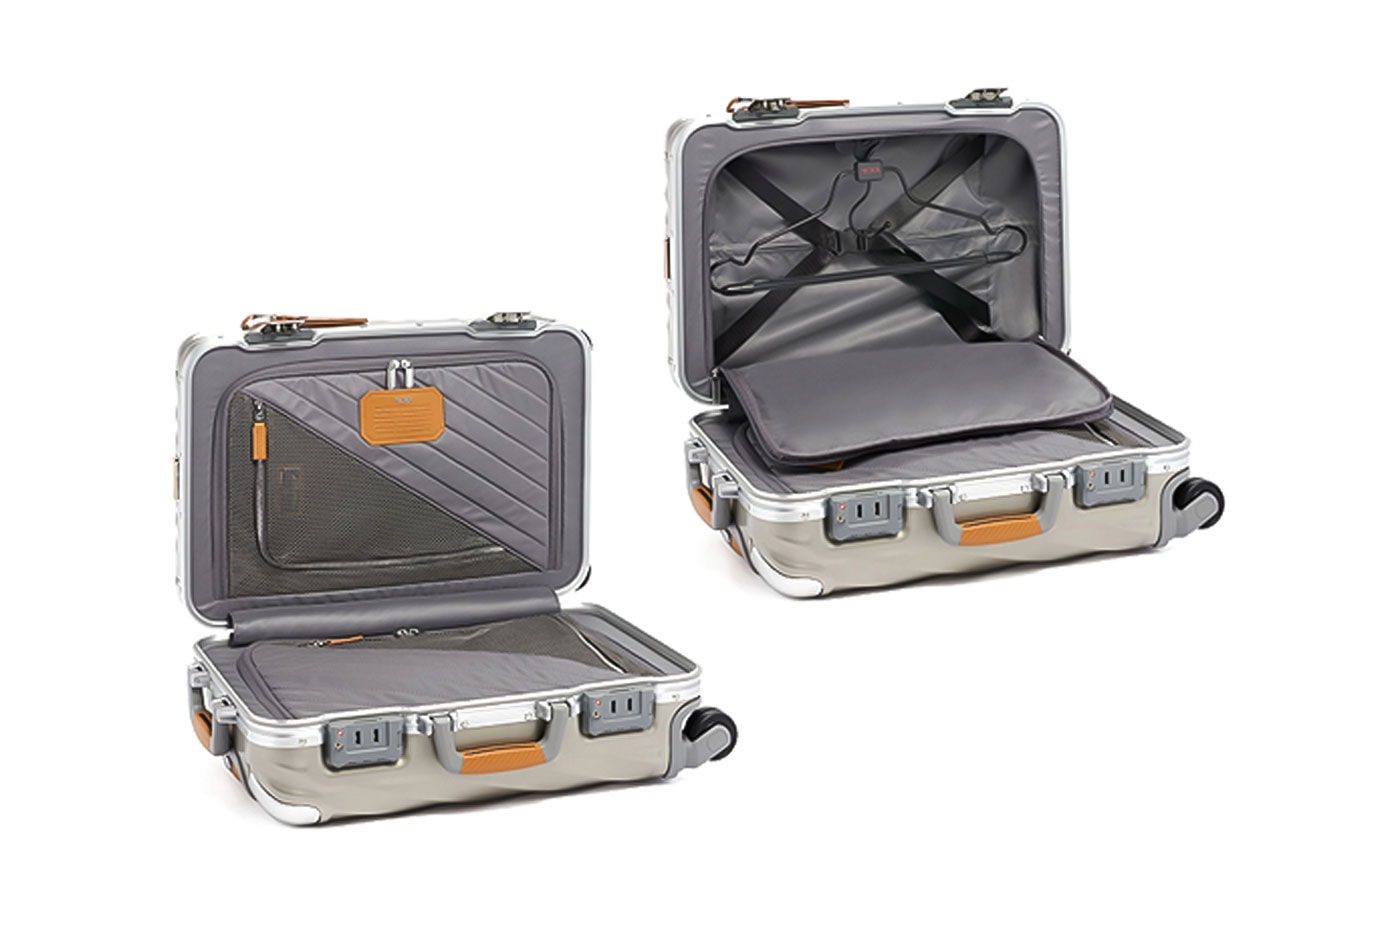 TUMI 19 Degree Titanium Luggage series metal aluminum luggage suitcases 